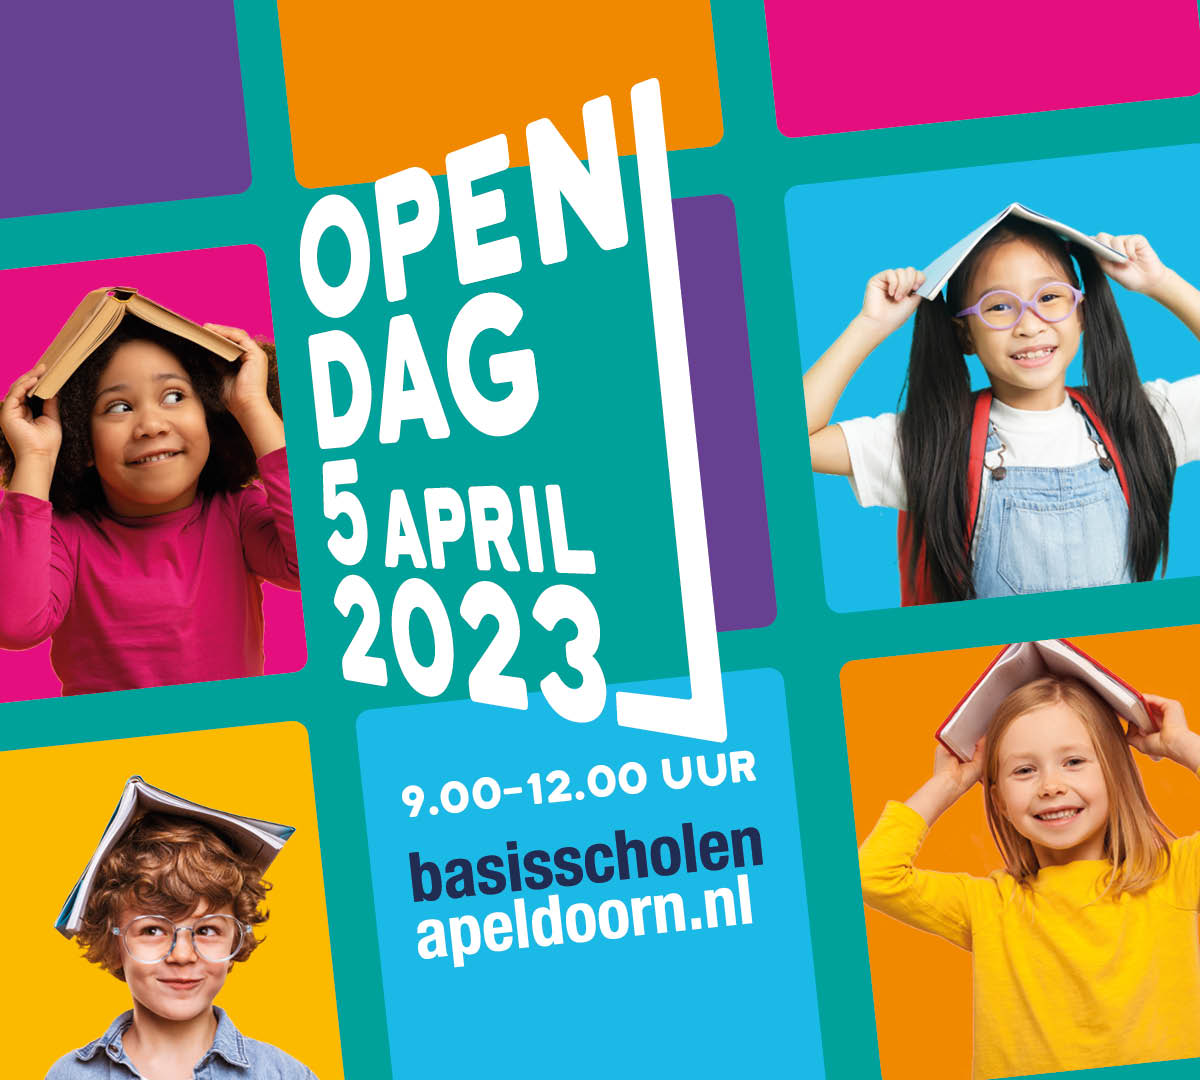 Open dag basisscholen Apeldoorn op woensdag 5 april